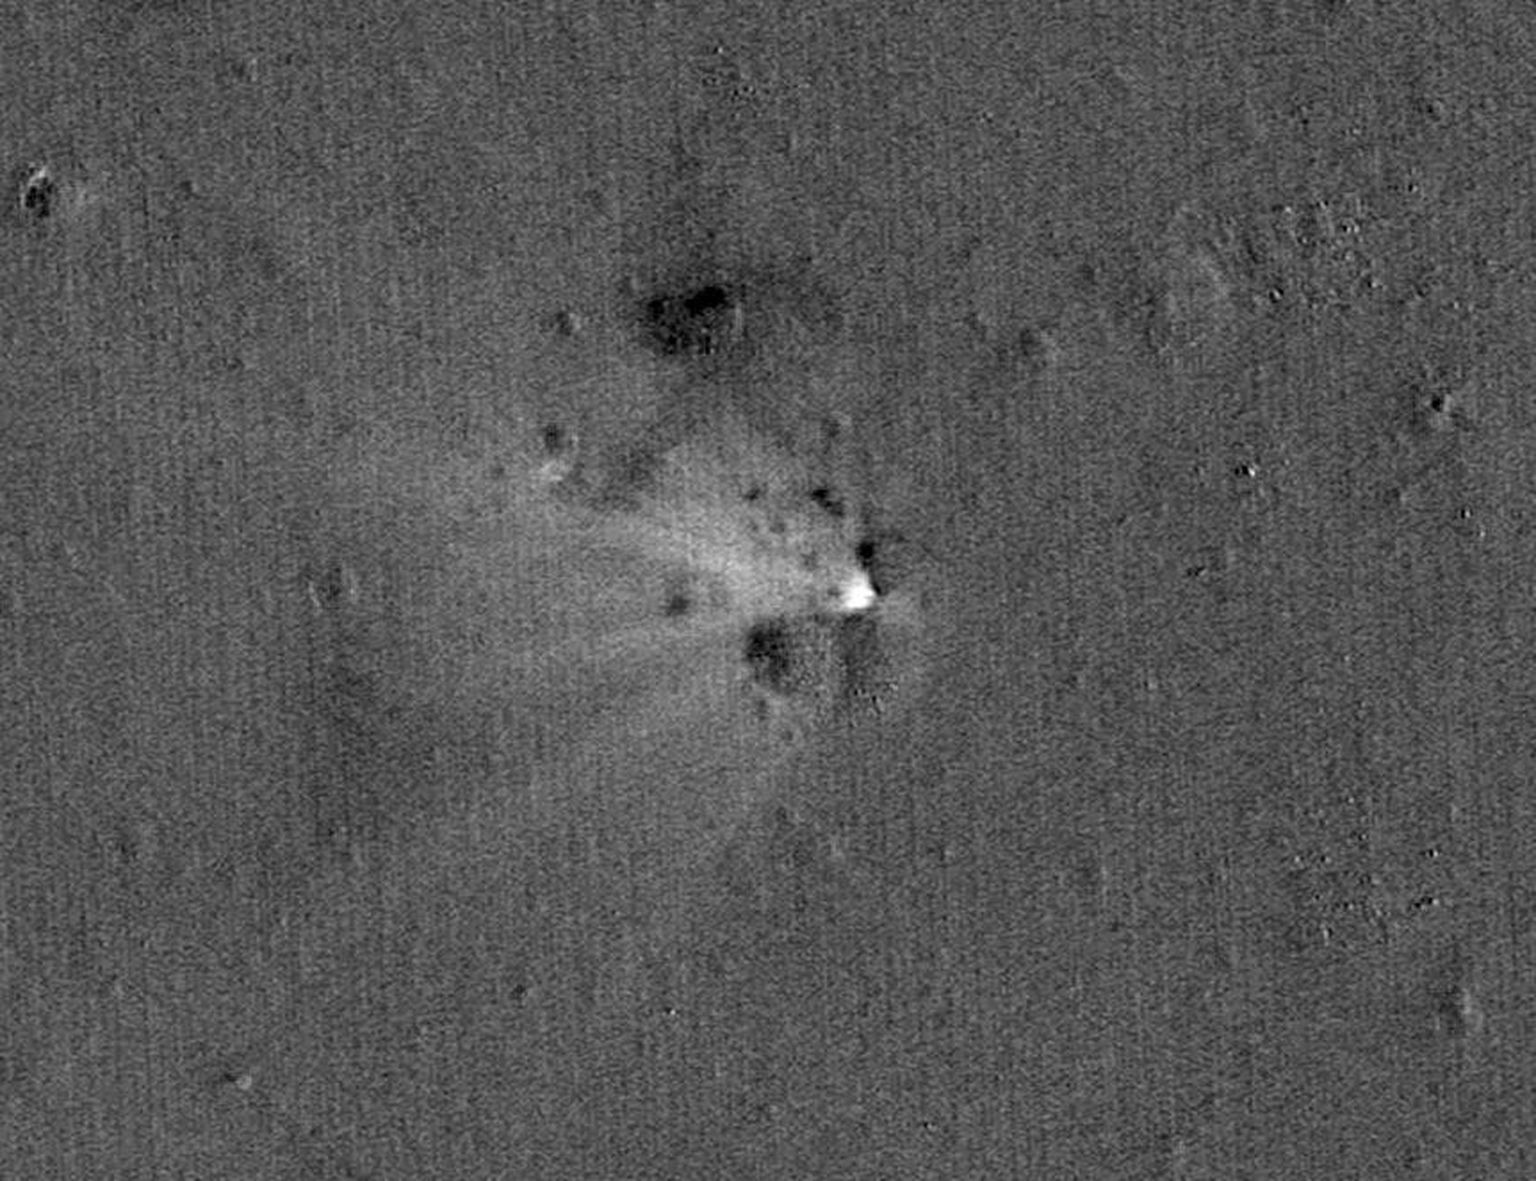 Kuul tekkis uurimissondi allakukkumise tõttu uus kraater